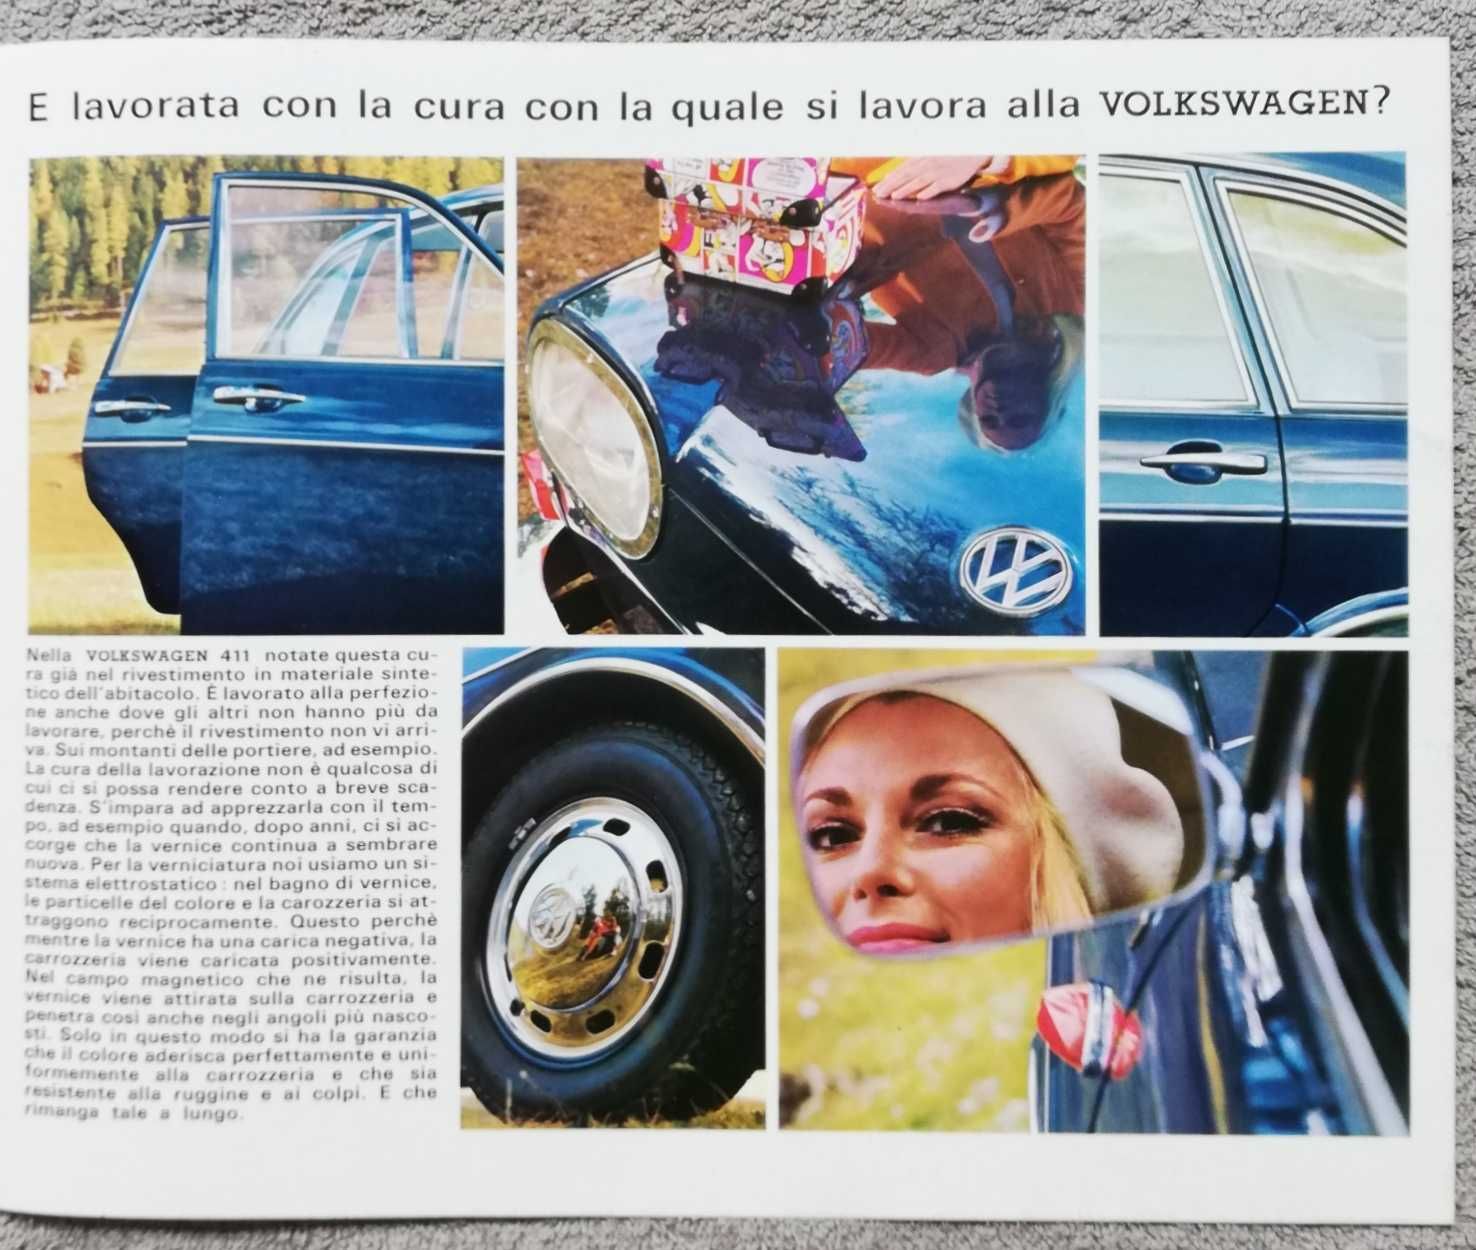 Prospekt Volkswagen 411 rok 1969